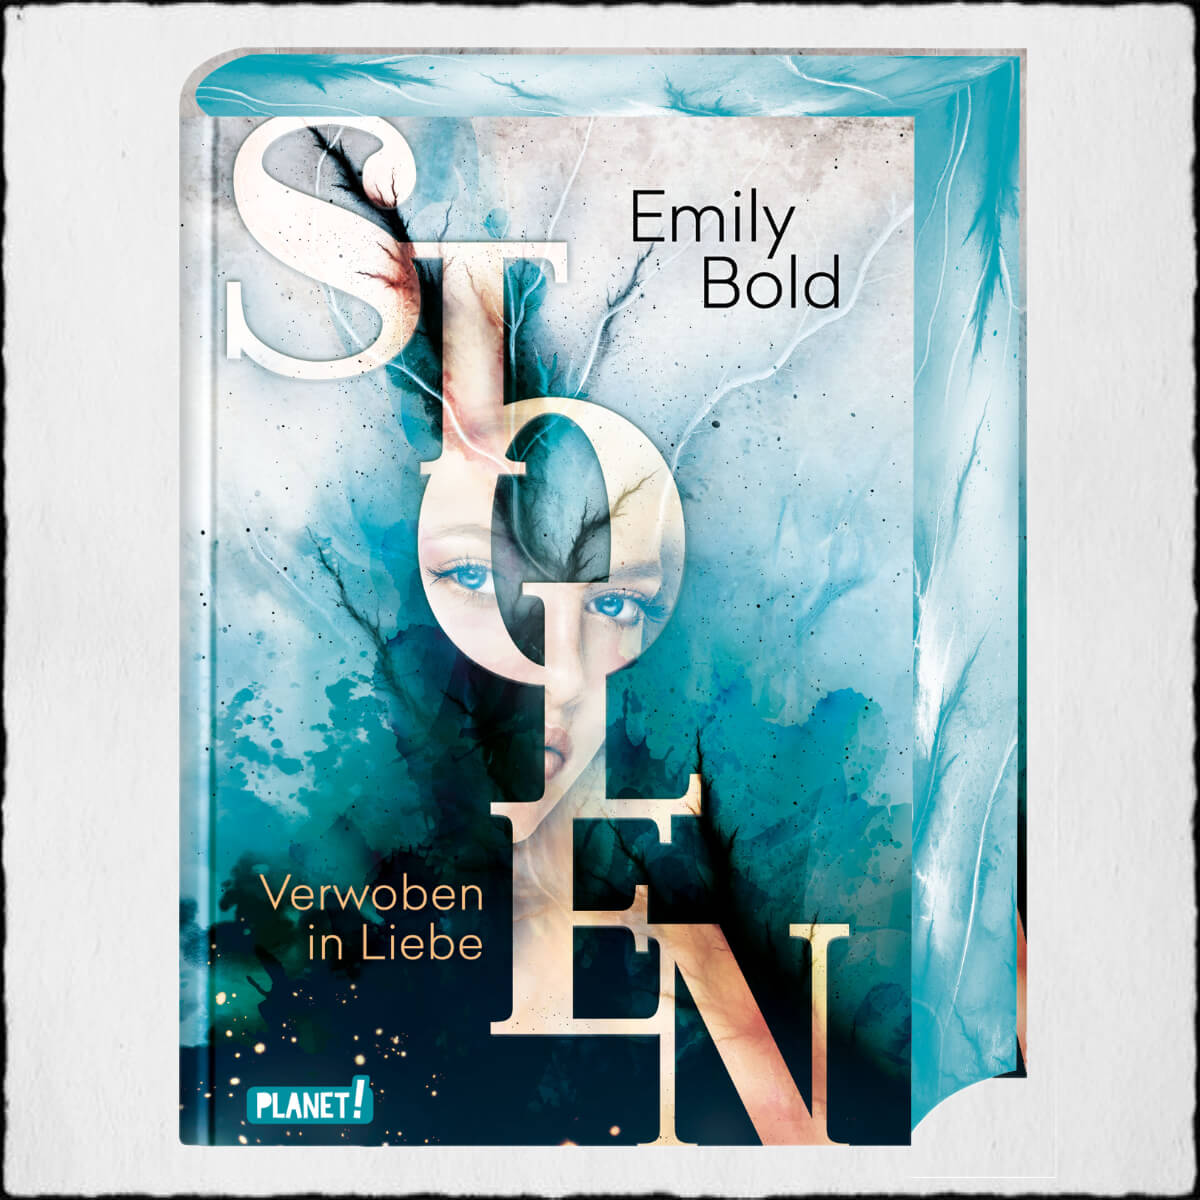 Emily Bold "Verwoben in Liebe - Stolen 1" ©2020 Planet! in der Thienemann-Esslinger Verlag GmbH